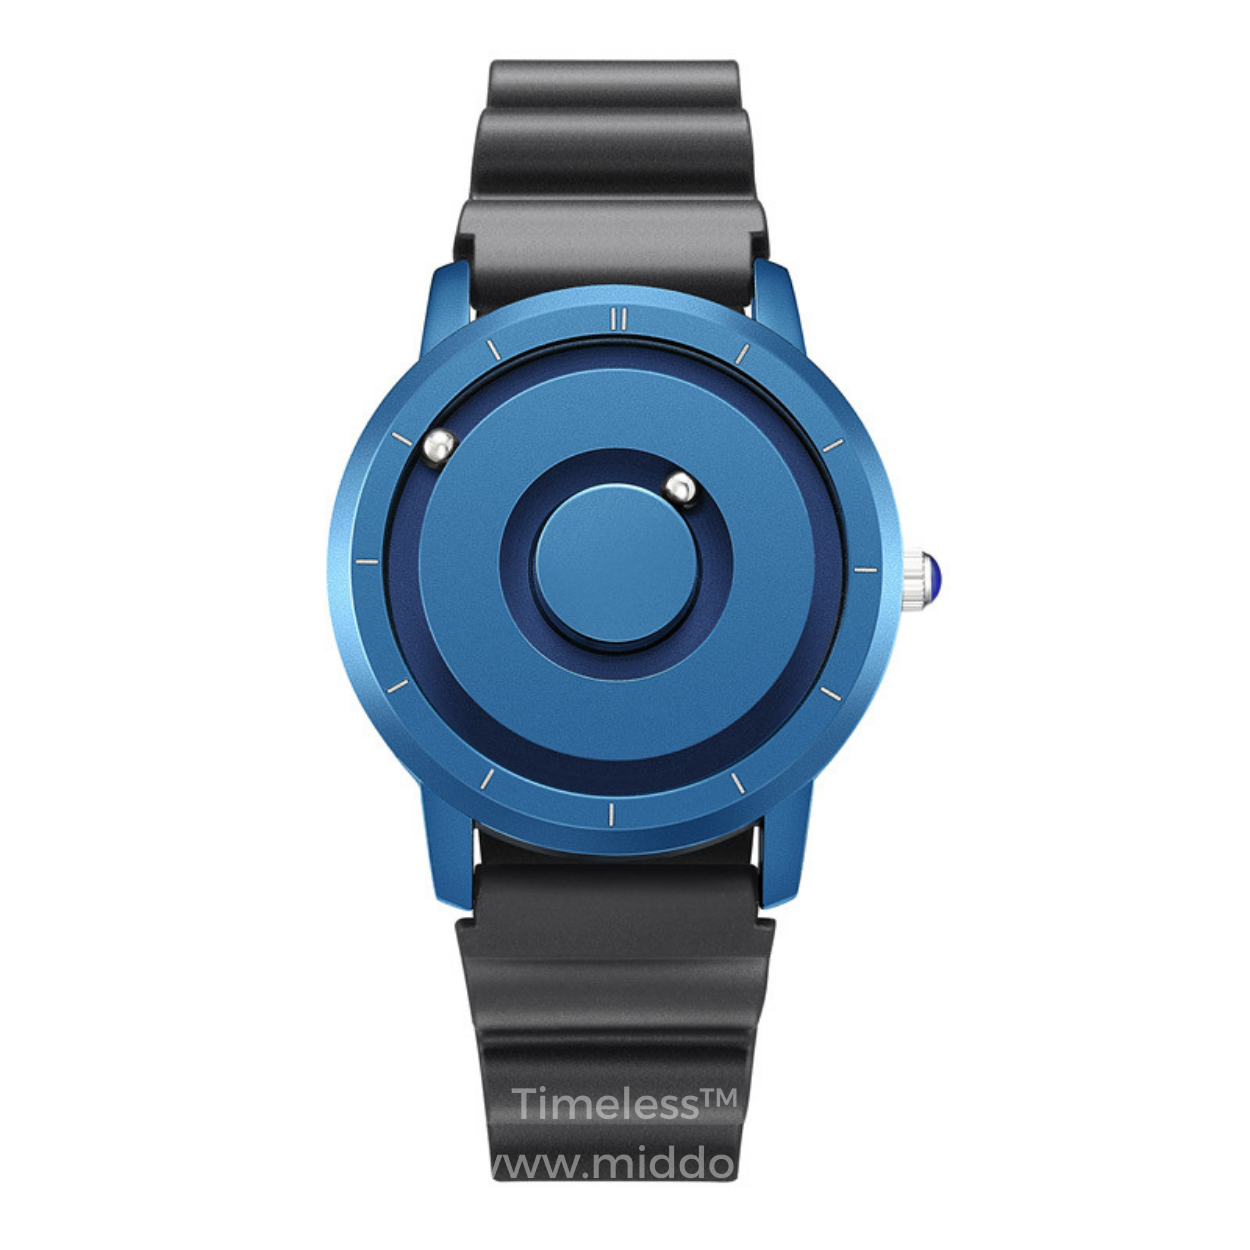 Blauw horloge met zwarte siliconenband en minimalistisch ontwerp.